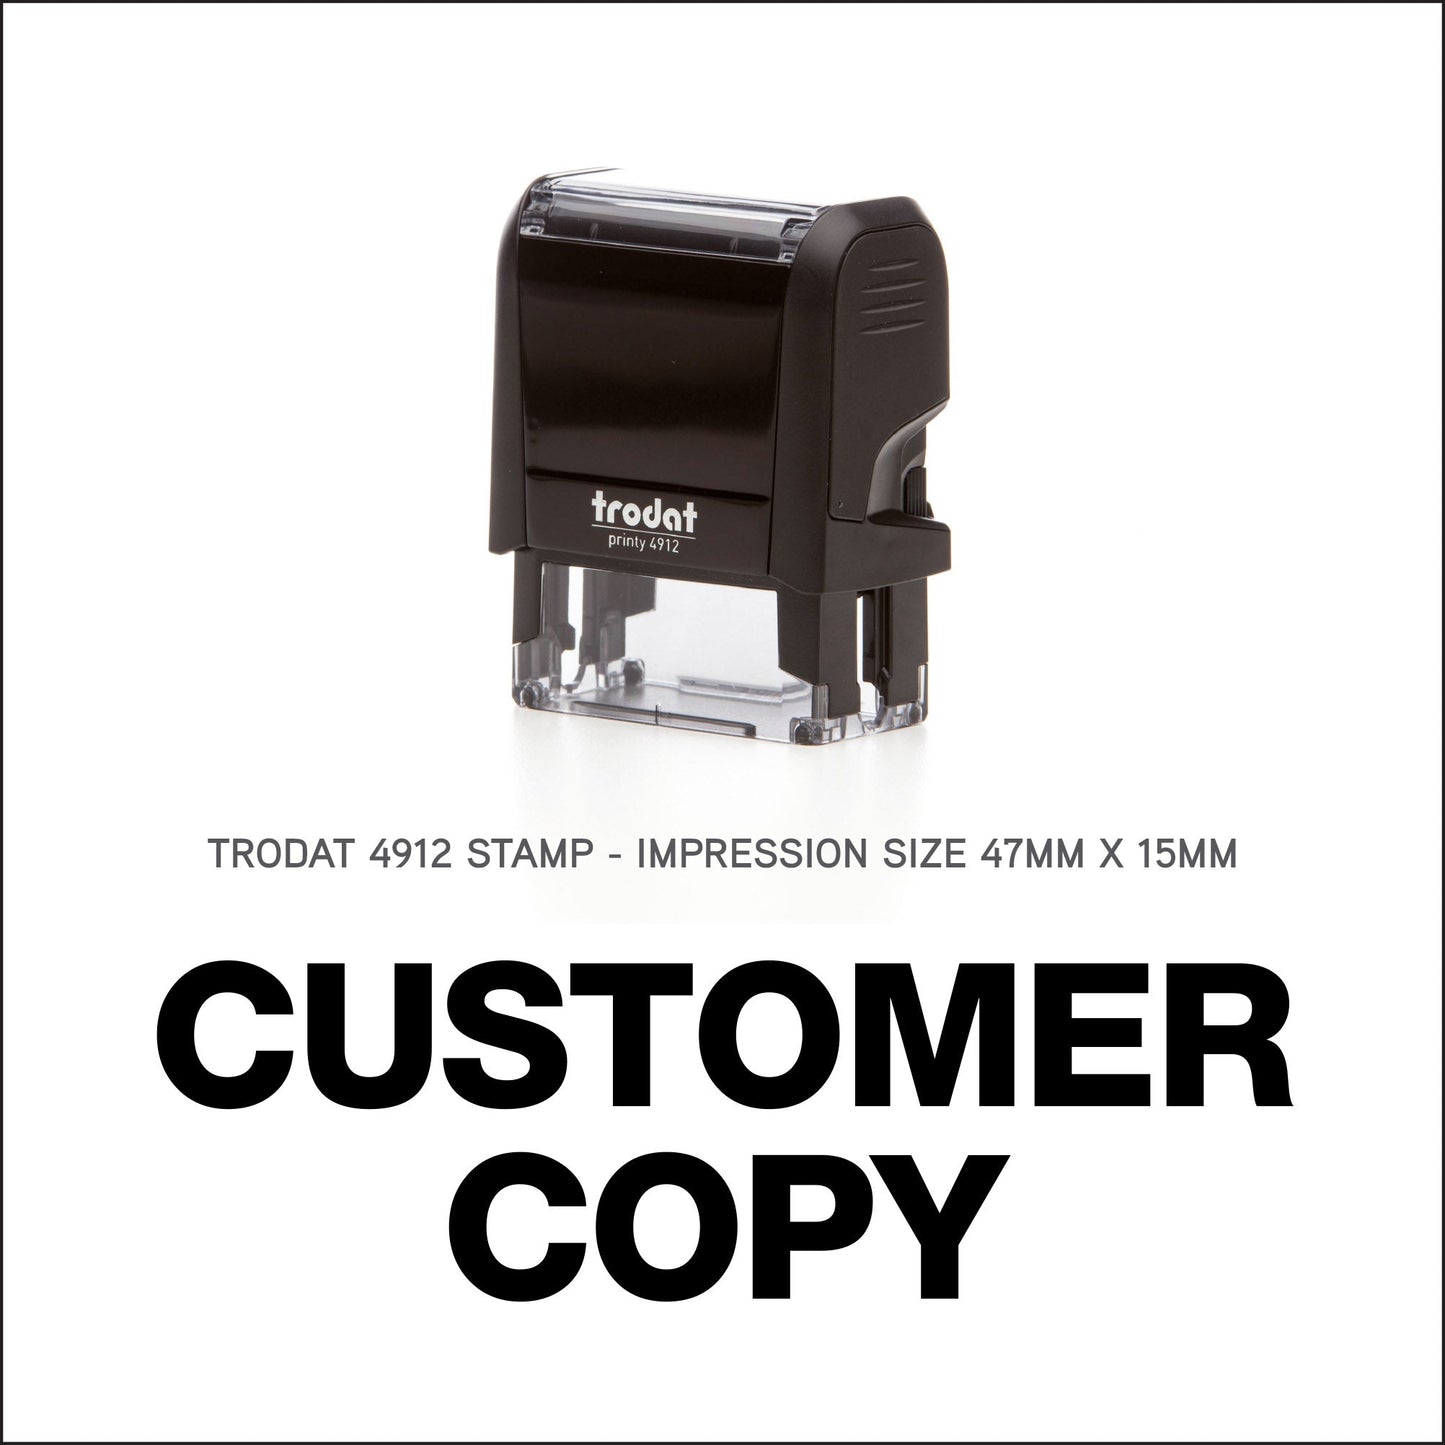 Customer Copy - Trodat 4912 - 47mm x 15mm Impression